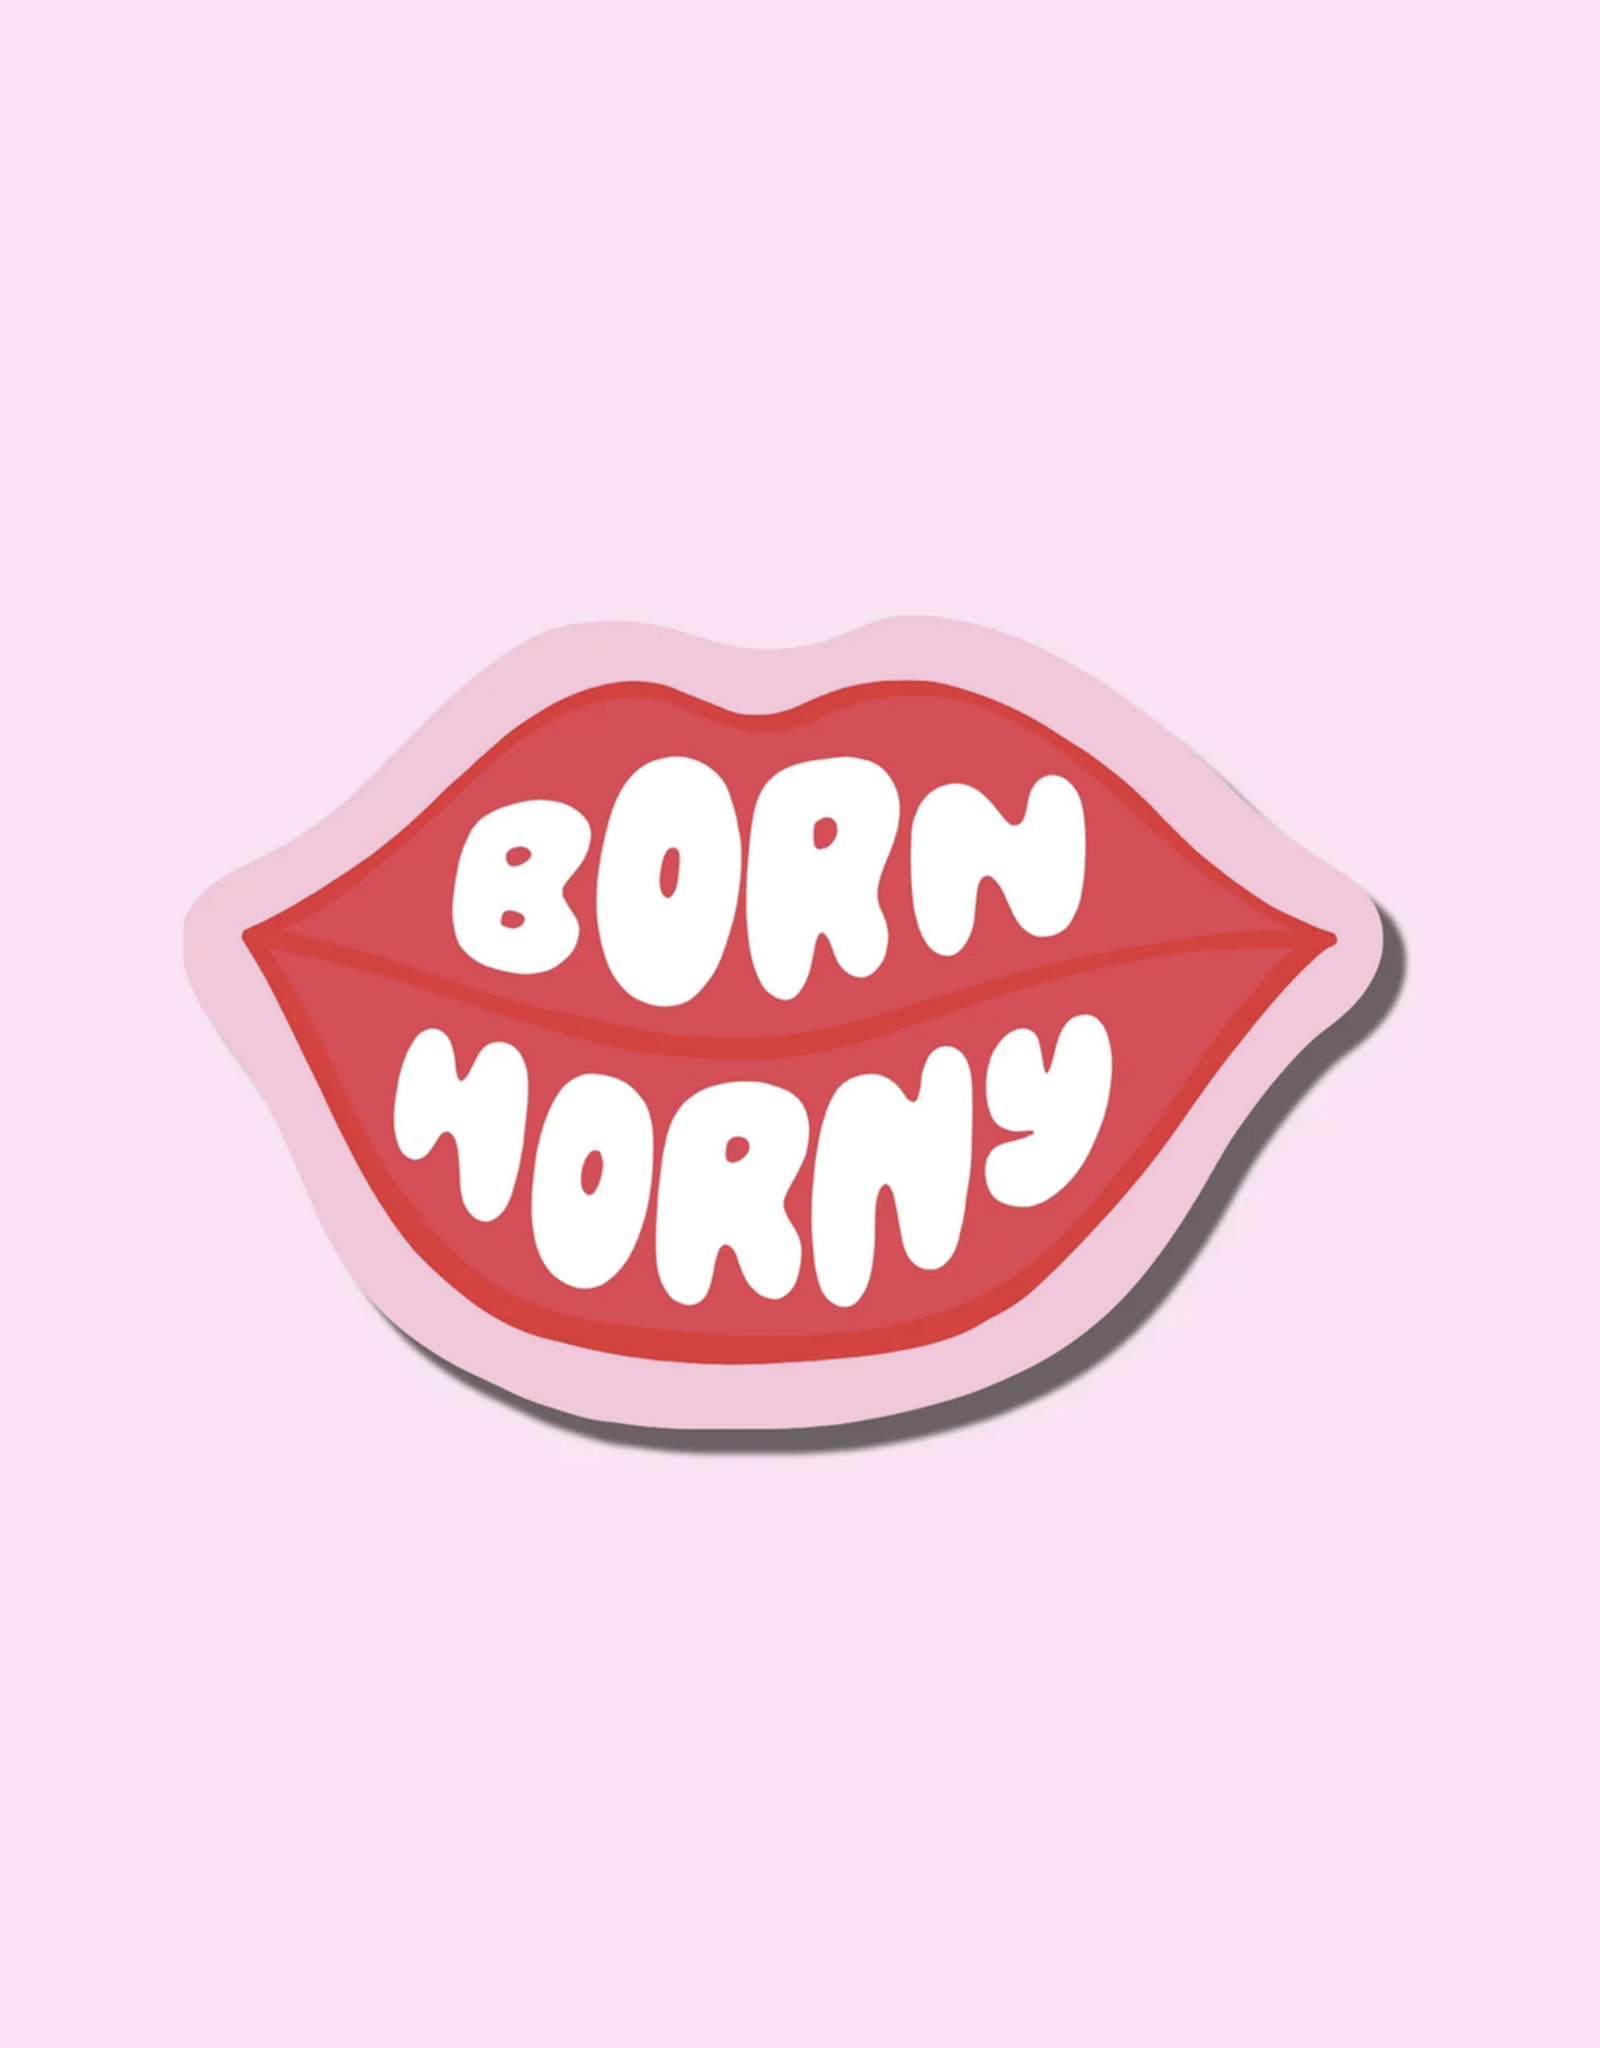 Born Horny Sticker